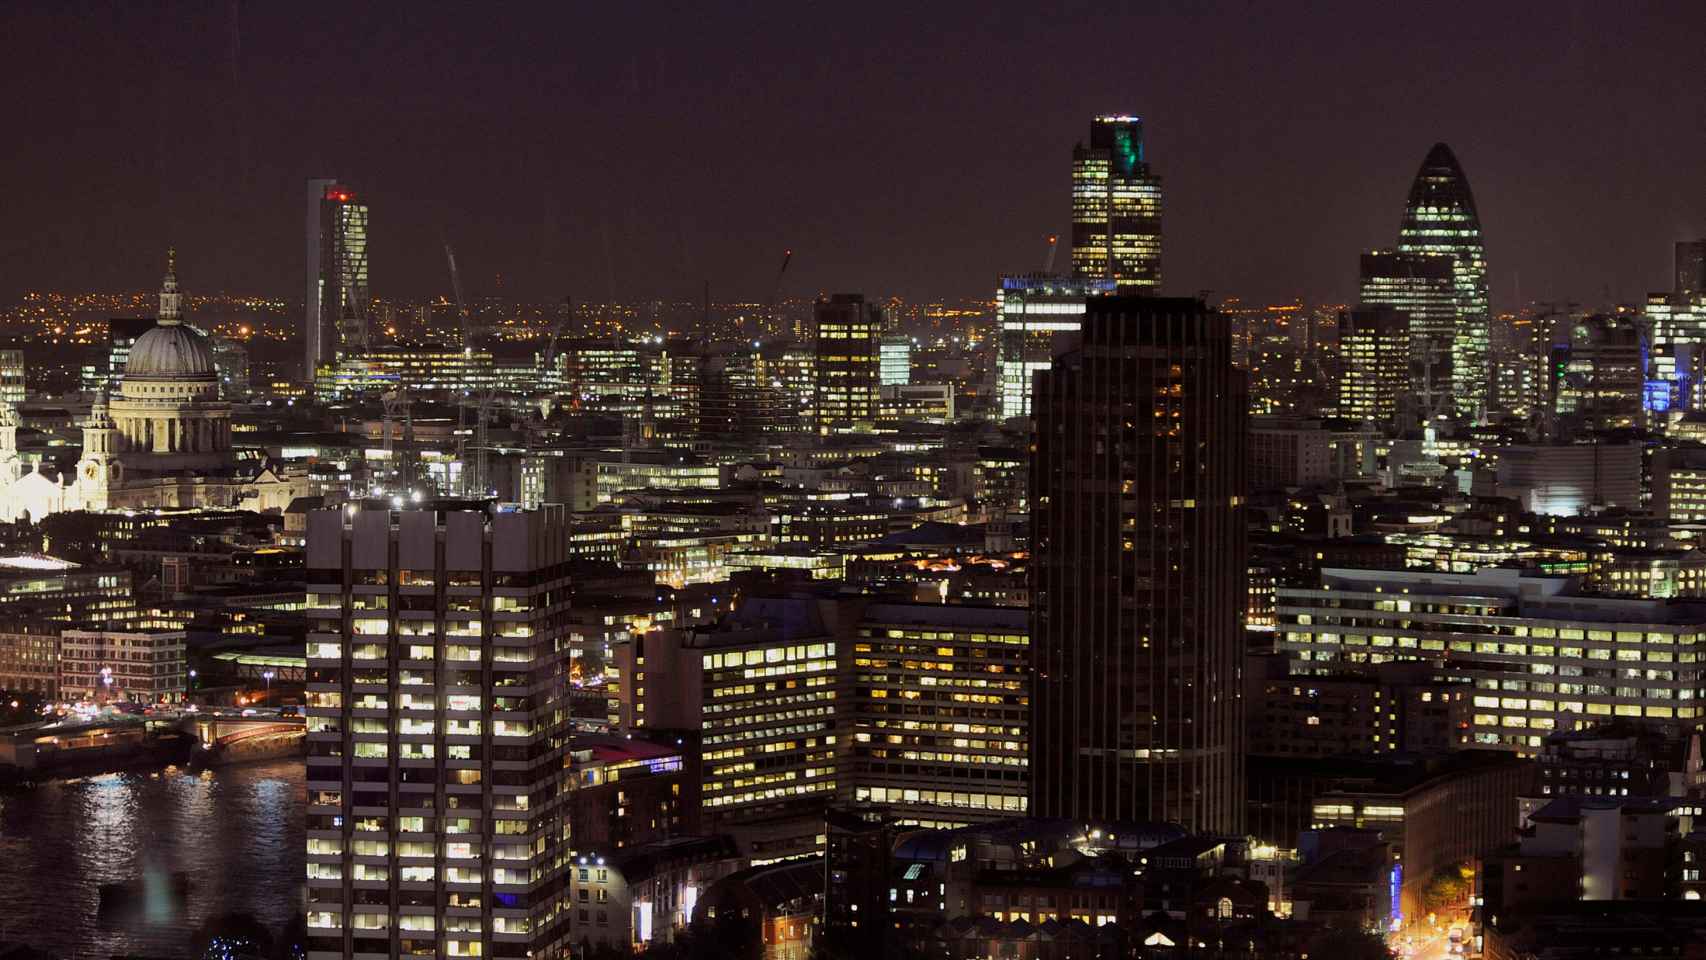 Vista del distrito financiero de Londres.